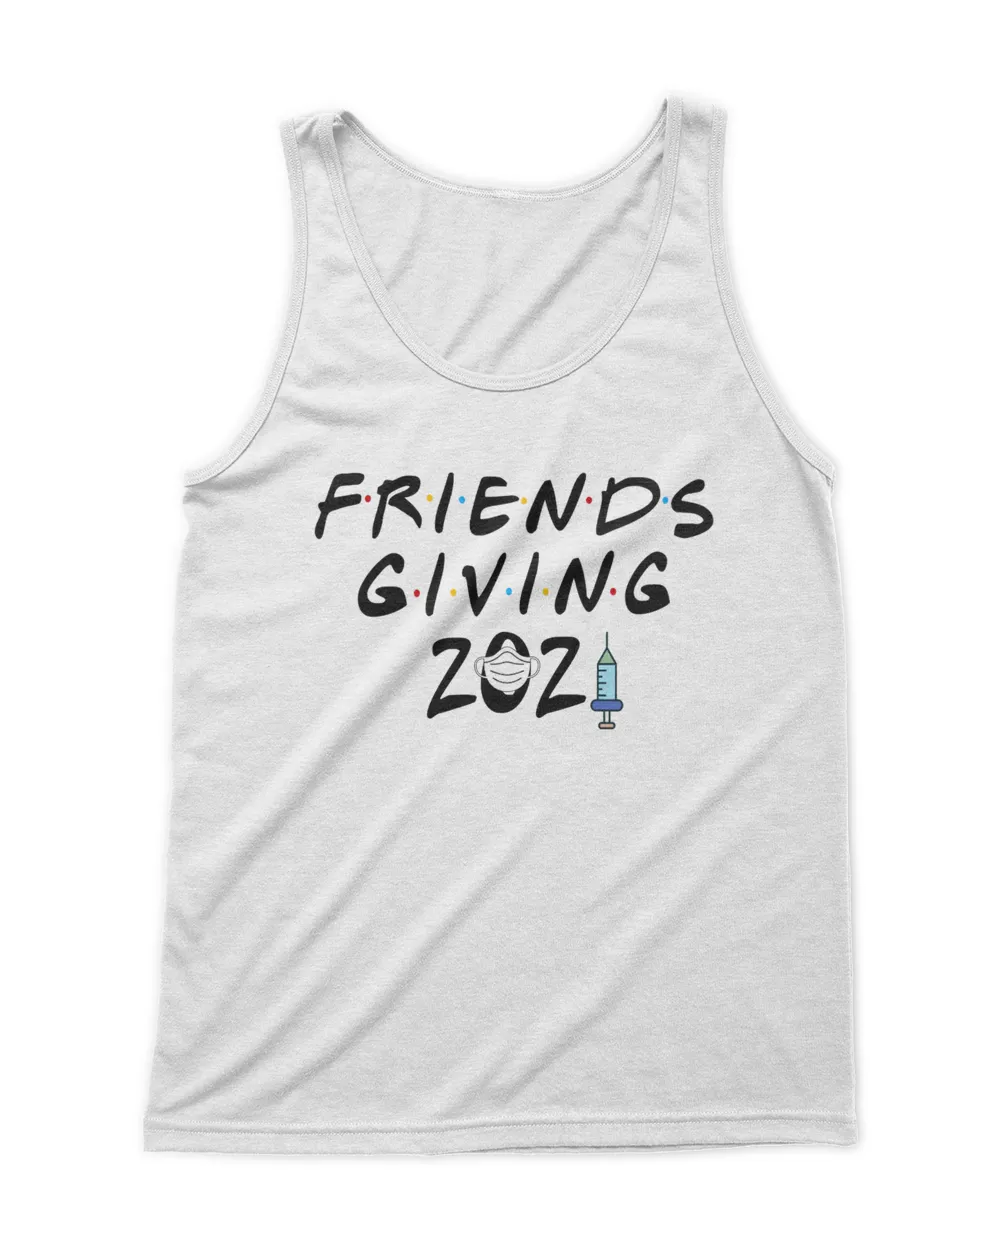 Friendsgiving 2021 Shirt